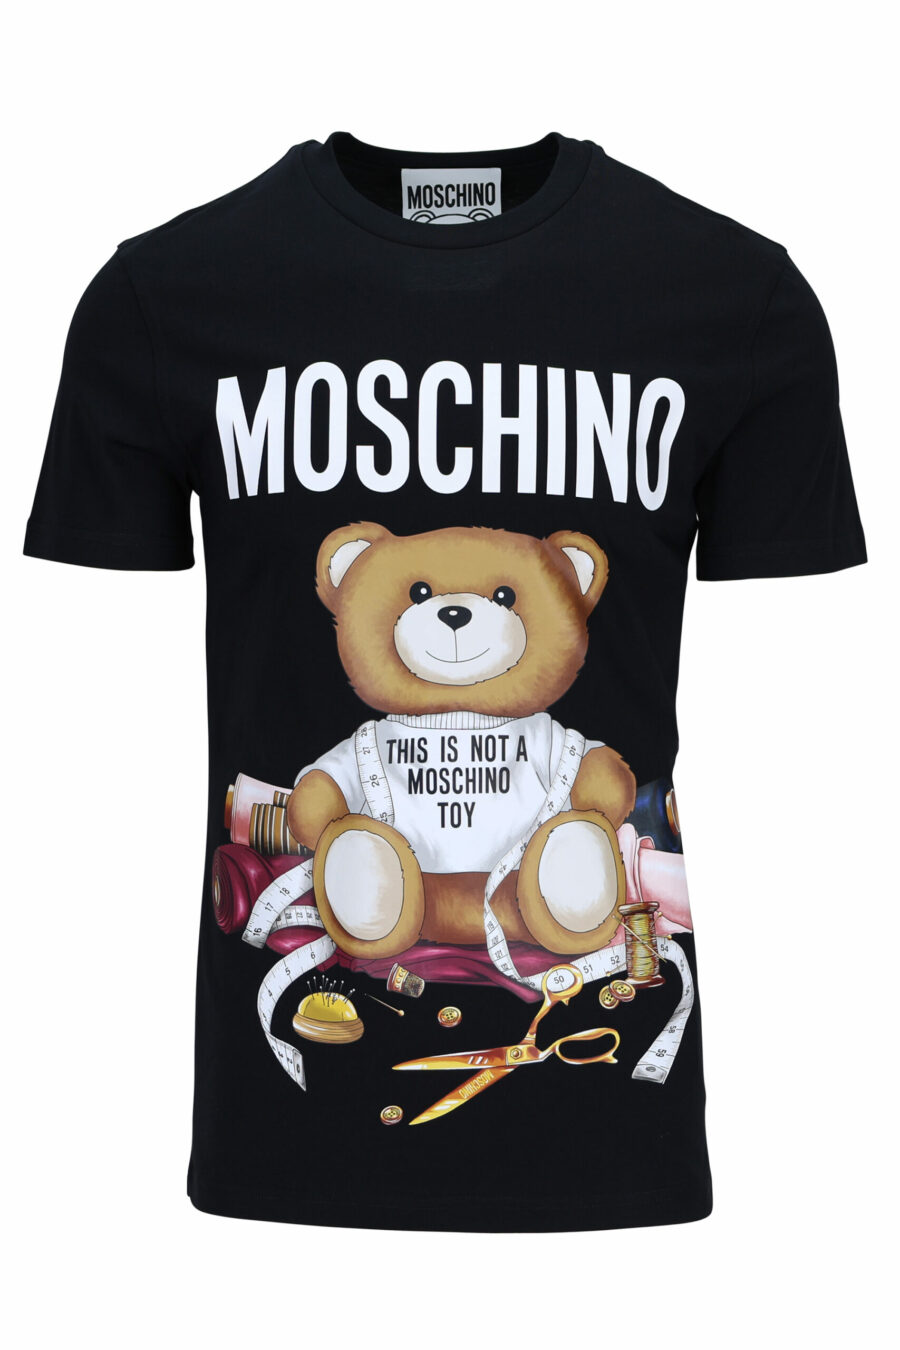 T-shirt schwarz mit "teddy" Schneider Maxilogo - 667113108032 1 skaliert